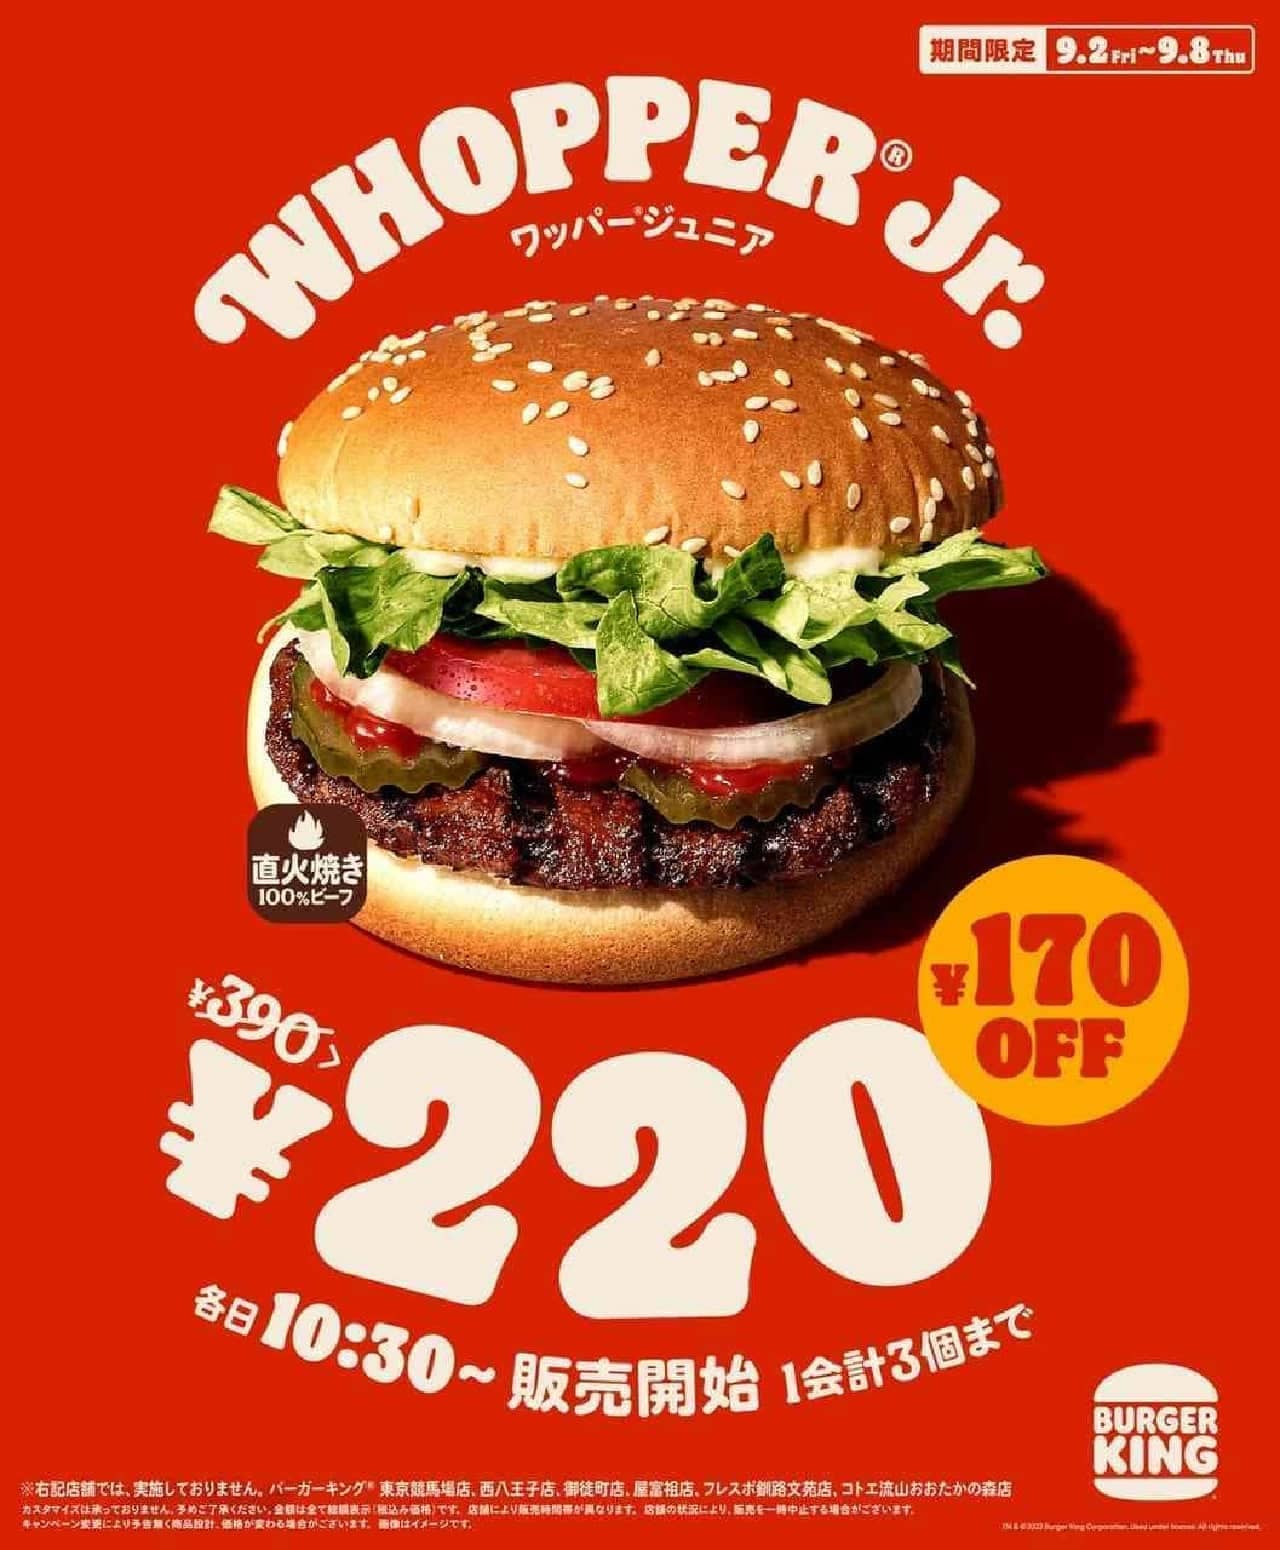 バーガーキング “ワッパー ジュニア 220円キャンペーン”